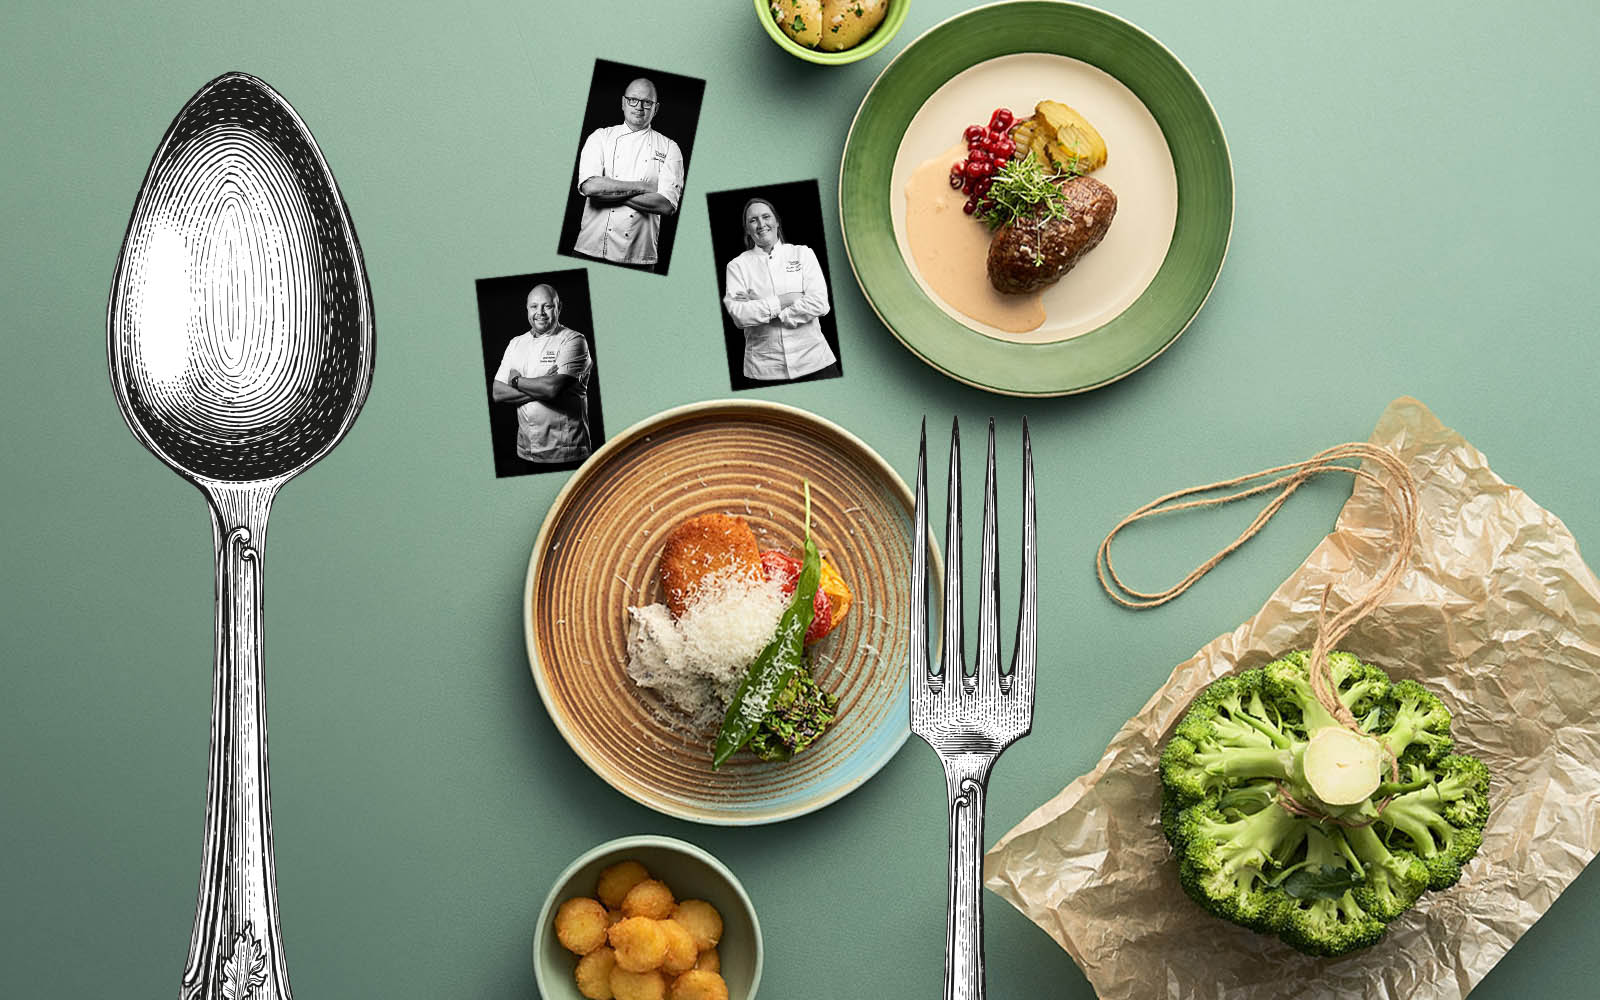 Vegetariska maträtter mot grön bakgrund. Tre bilder på kockar och kulonariska kreatörer Johan, Johan och Camilla ligger mellan tallrikarna. I förgrunden syns en illustrerad gaffel och en illustrerad sked.